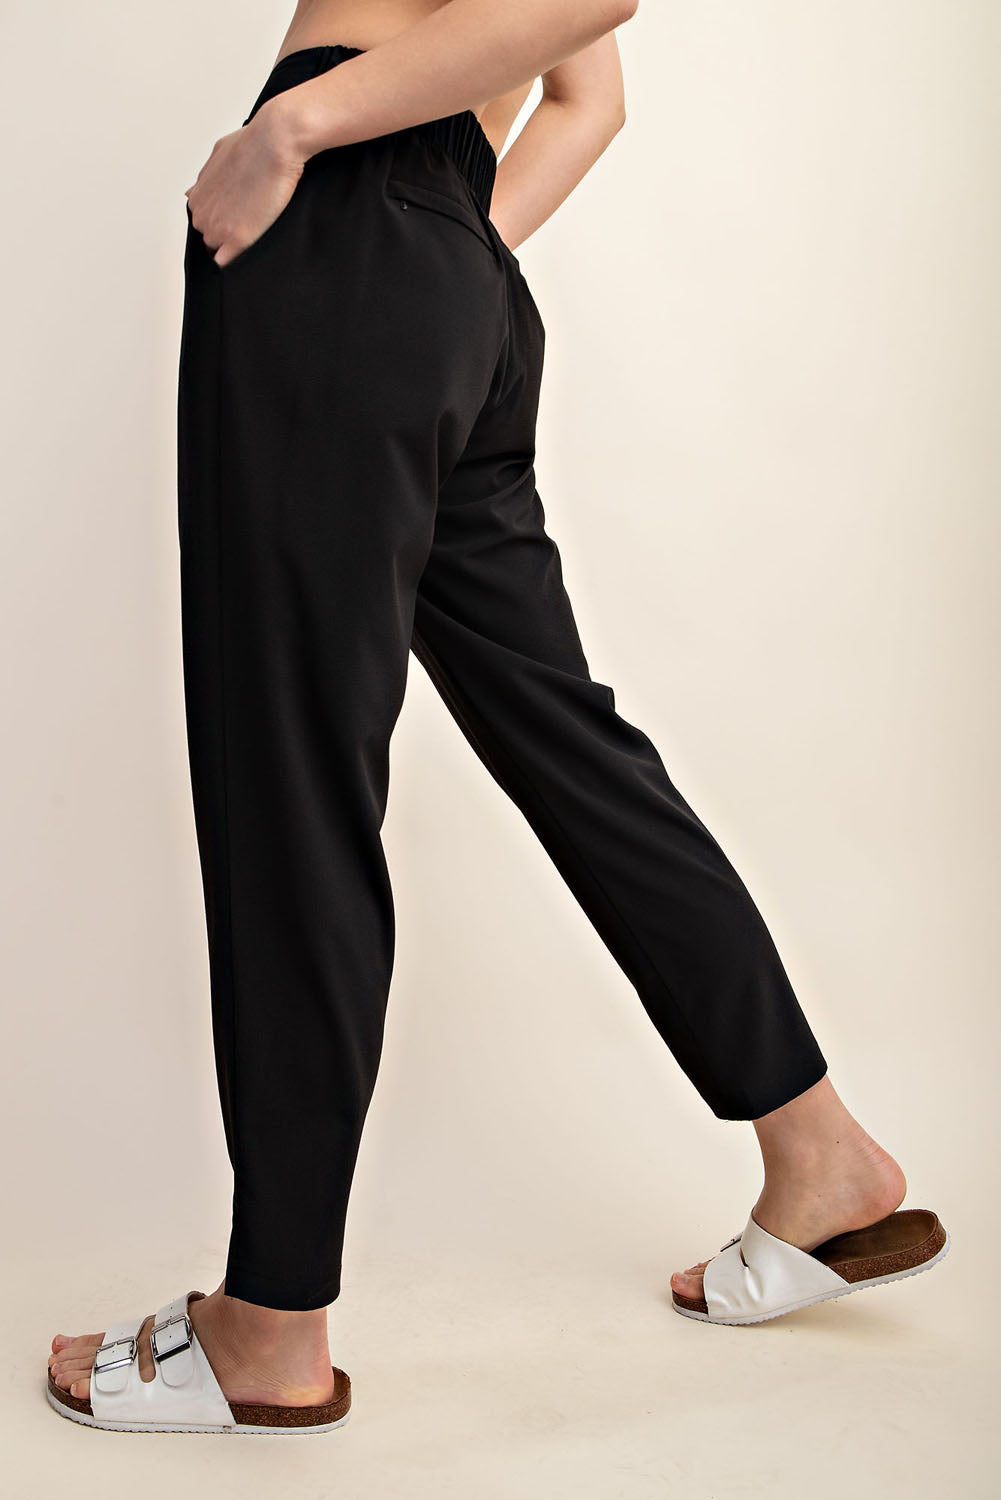 Crinkle Woven Full Length Pant - Black